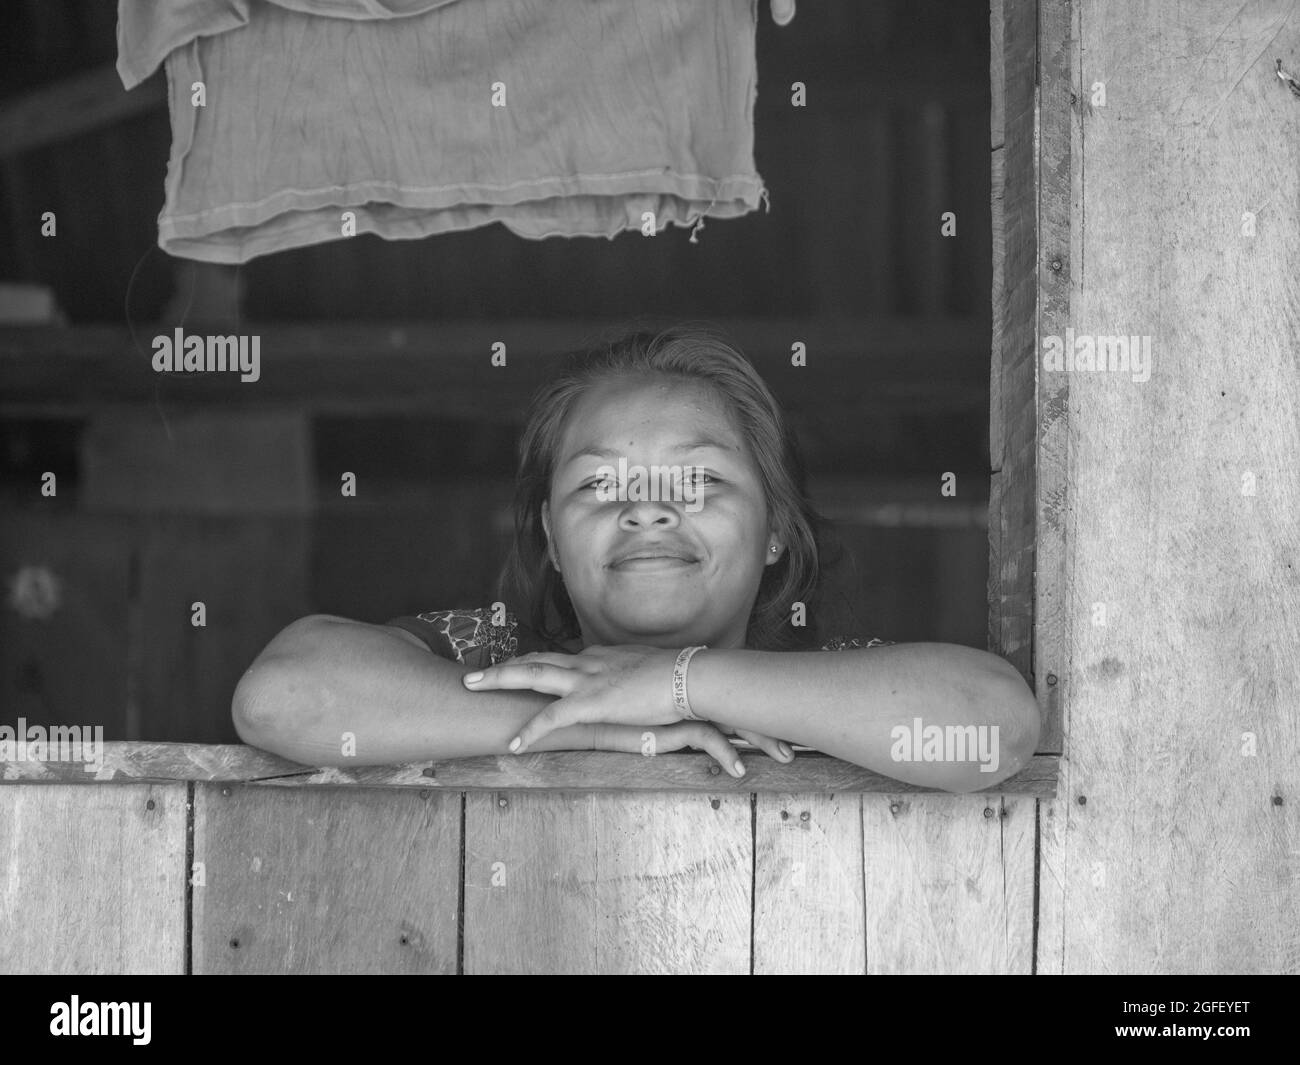 Santa Rita, Pérou - sept 2017: Portrait d'une femme heureuse habitant de la forêt amazonienne - dans la vallée de Javari. Amazonie. Amérique latine Banque D'Images